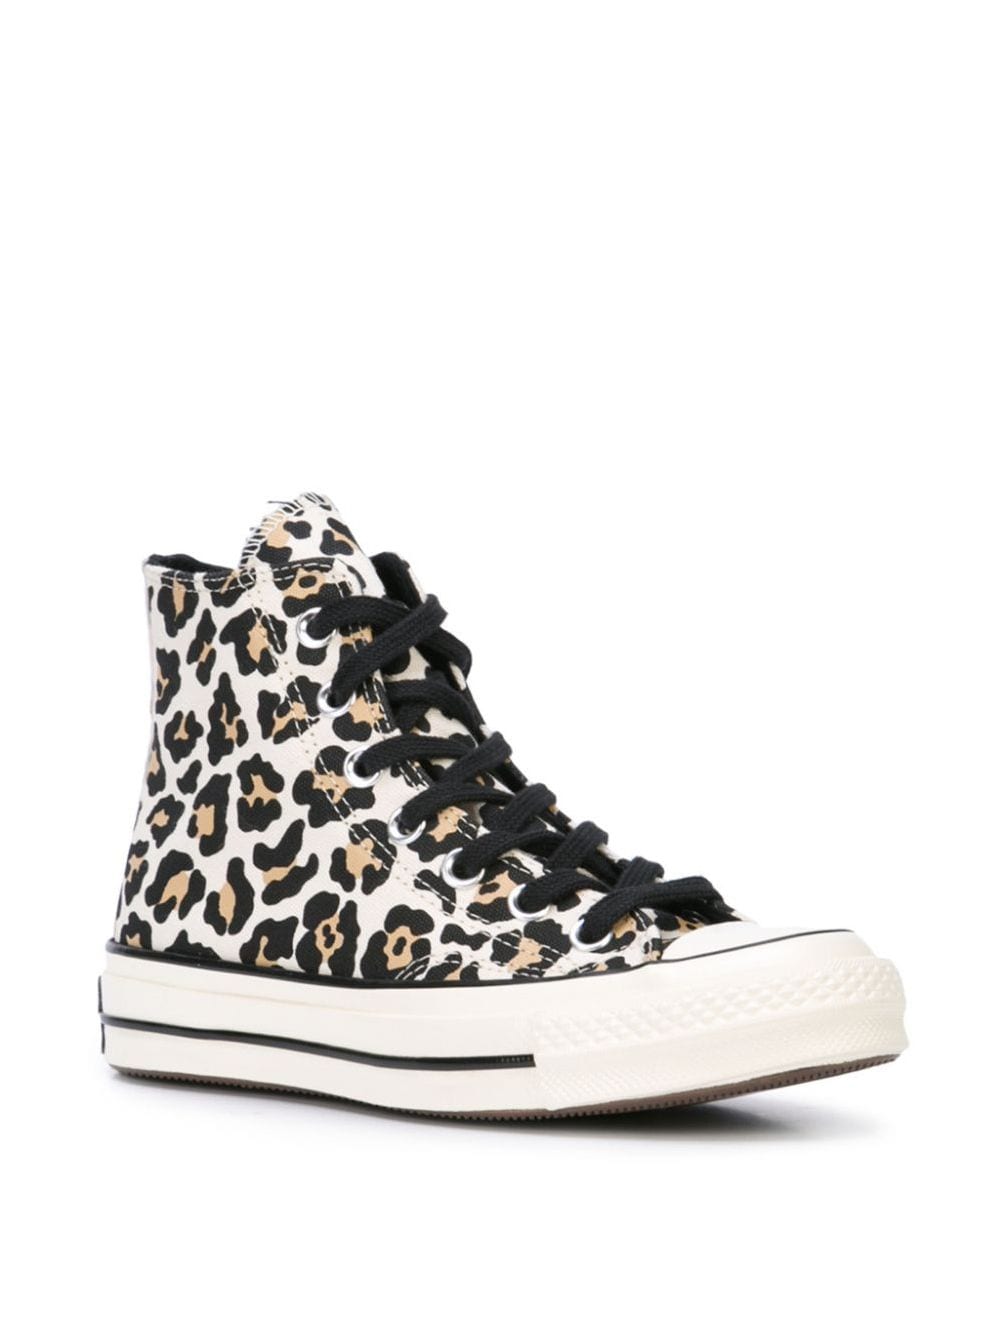 фото Converse высокие кроссовки с леопардовым принтом